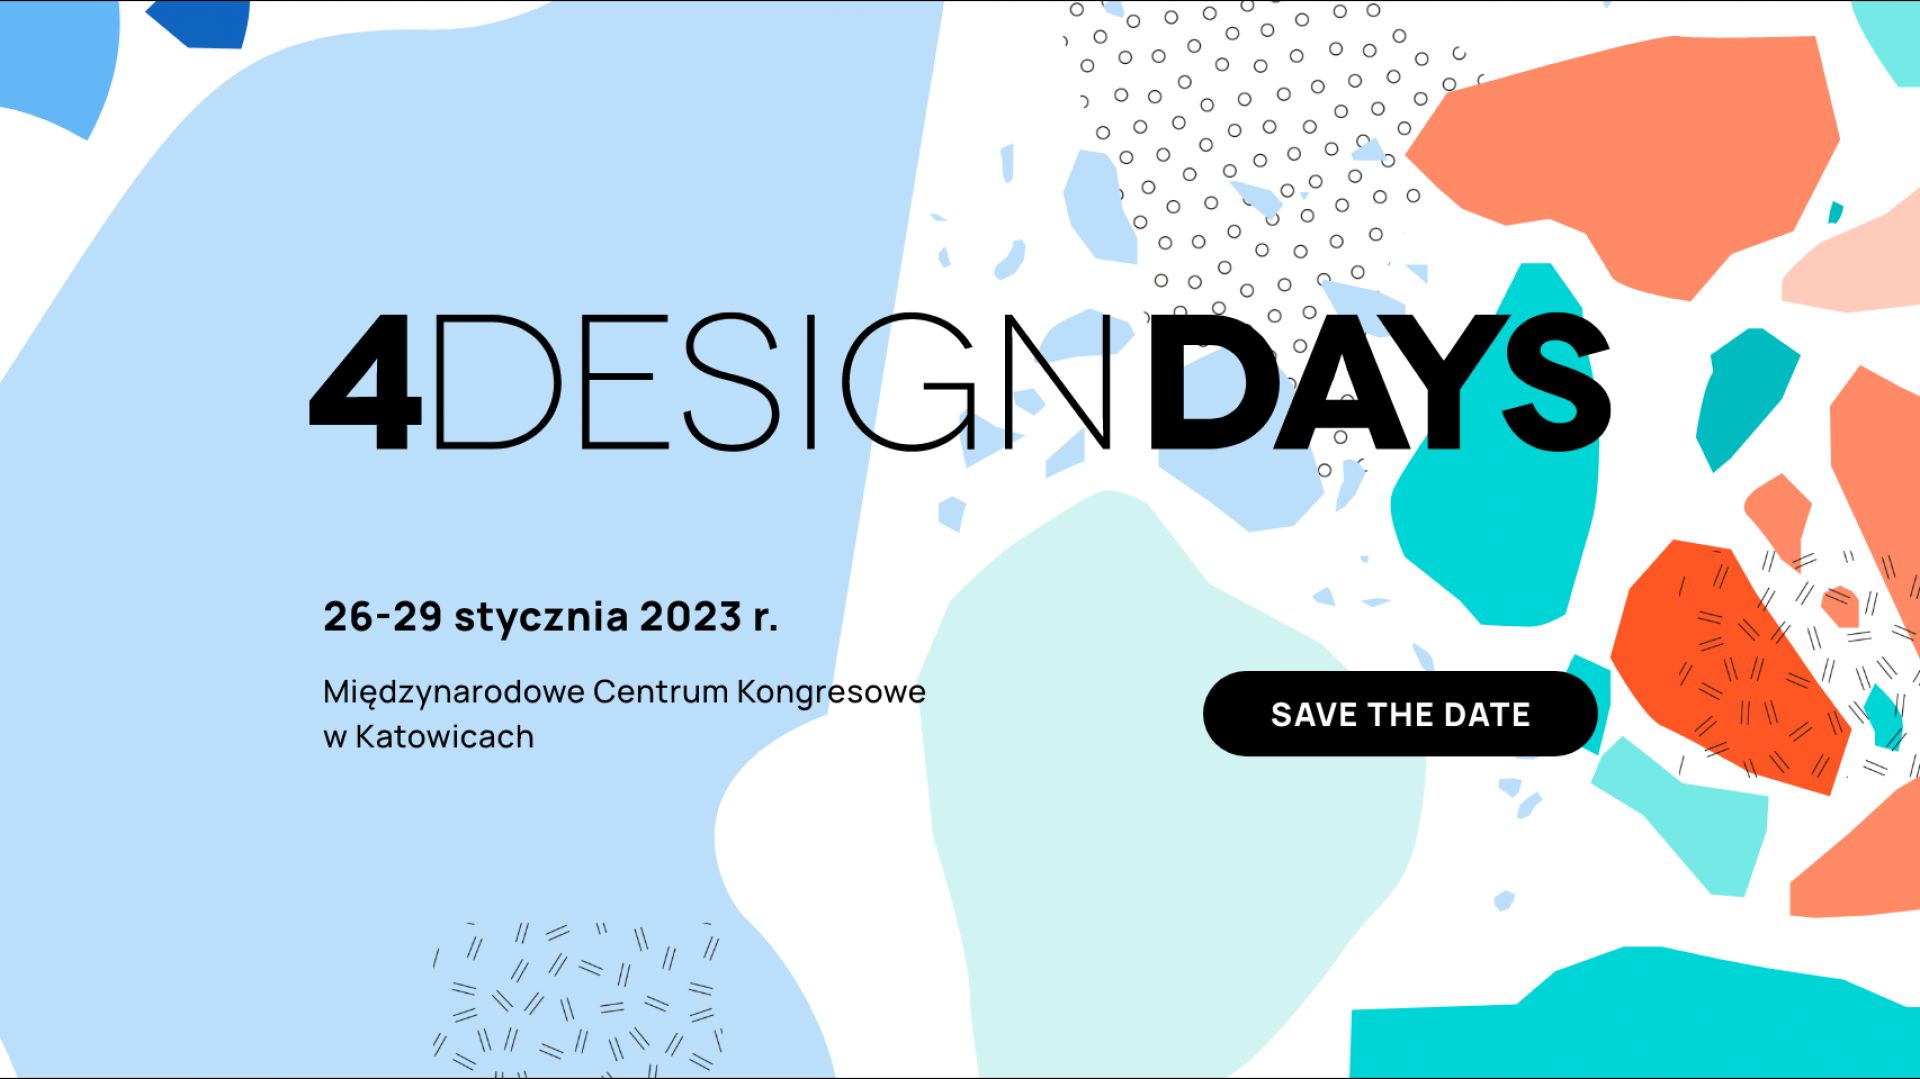 Zapraszamy na 4 Design Days 2023! Zobacz nową stronę wydarzenia!